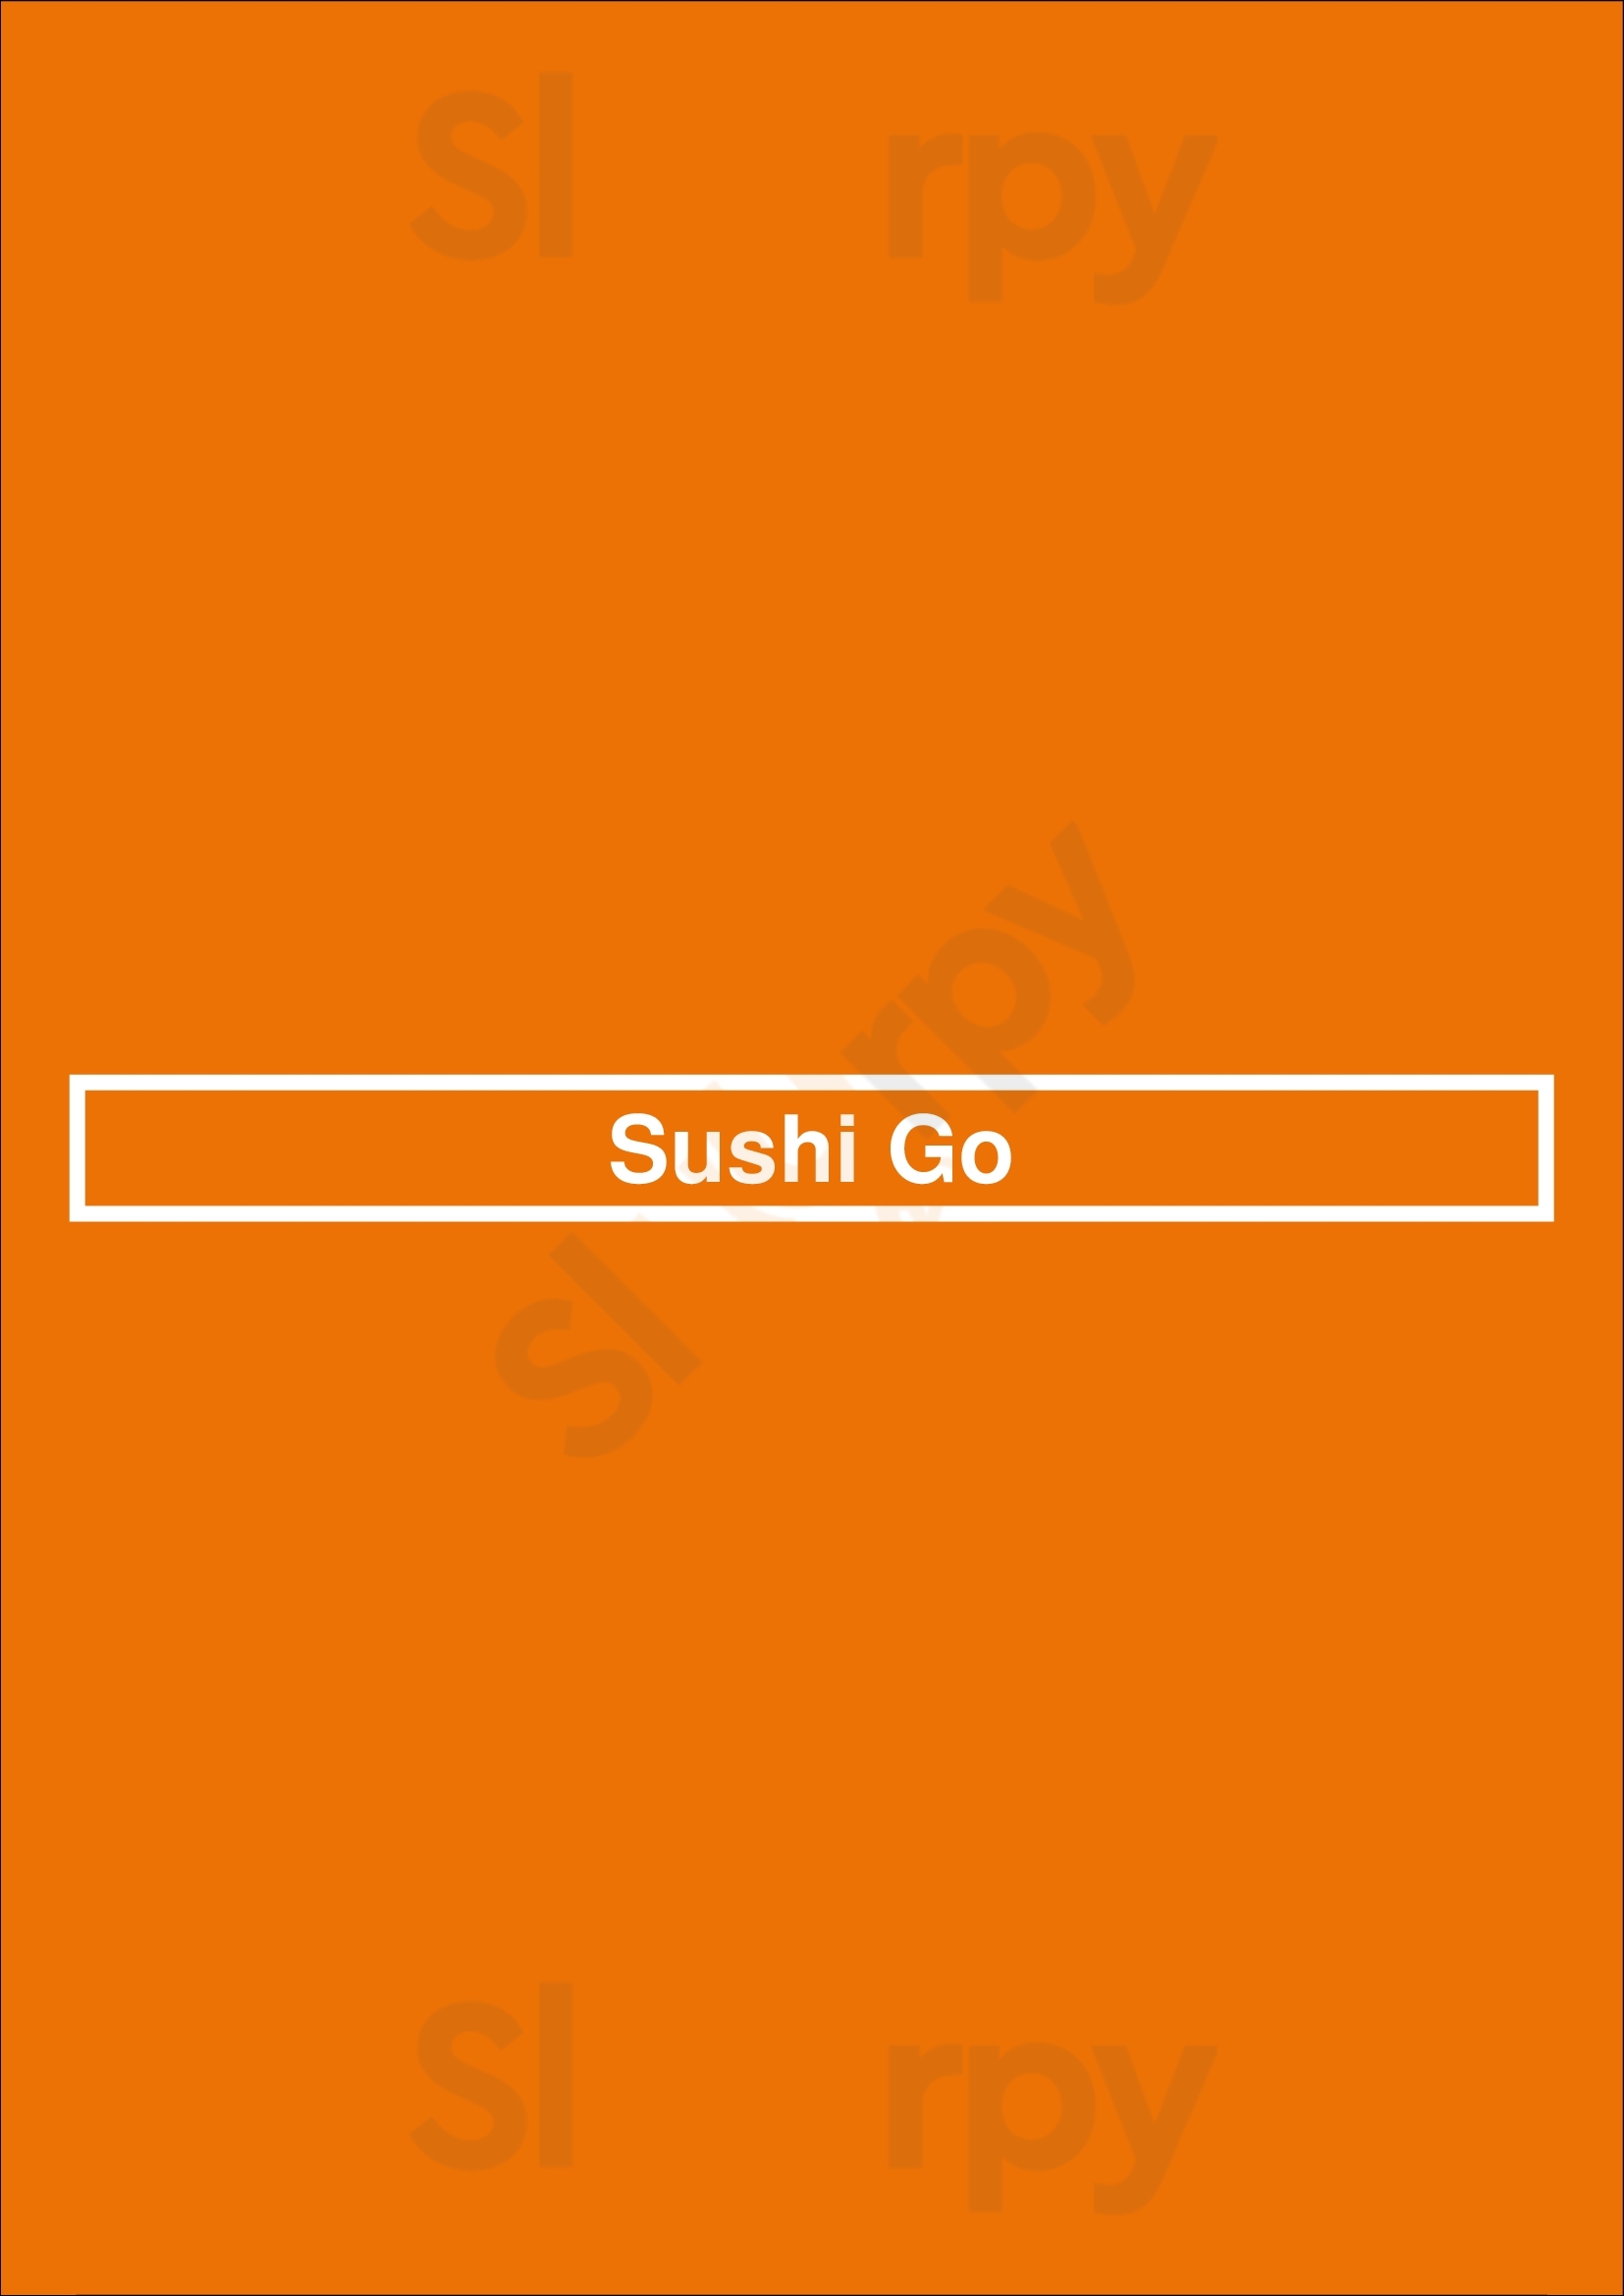 Sushi Go Ottawa Menu - 1